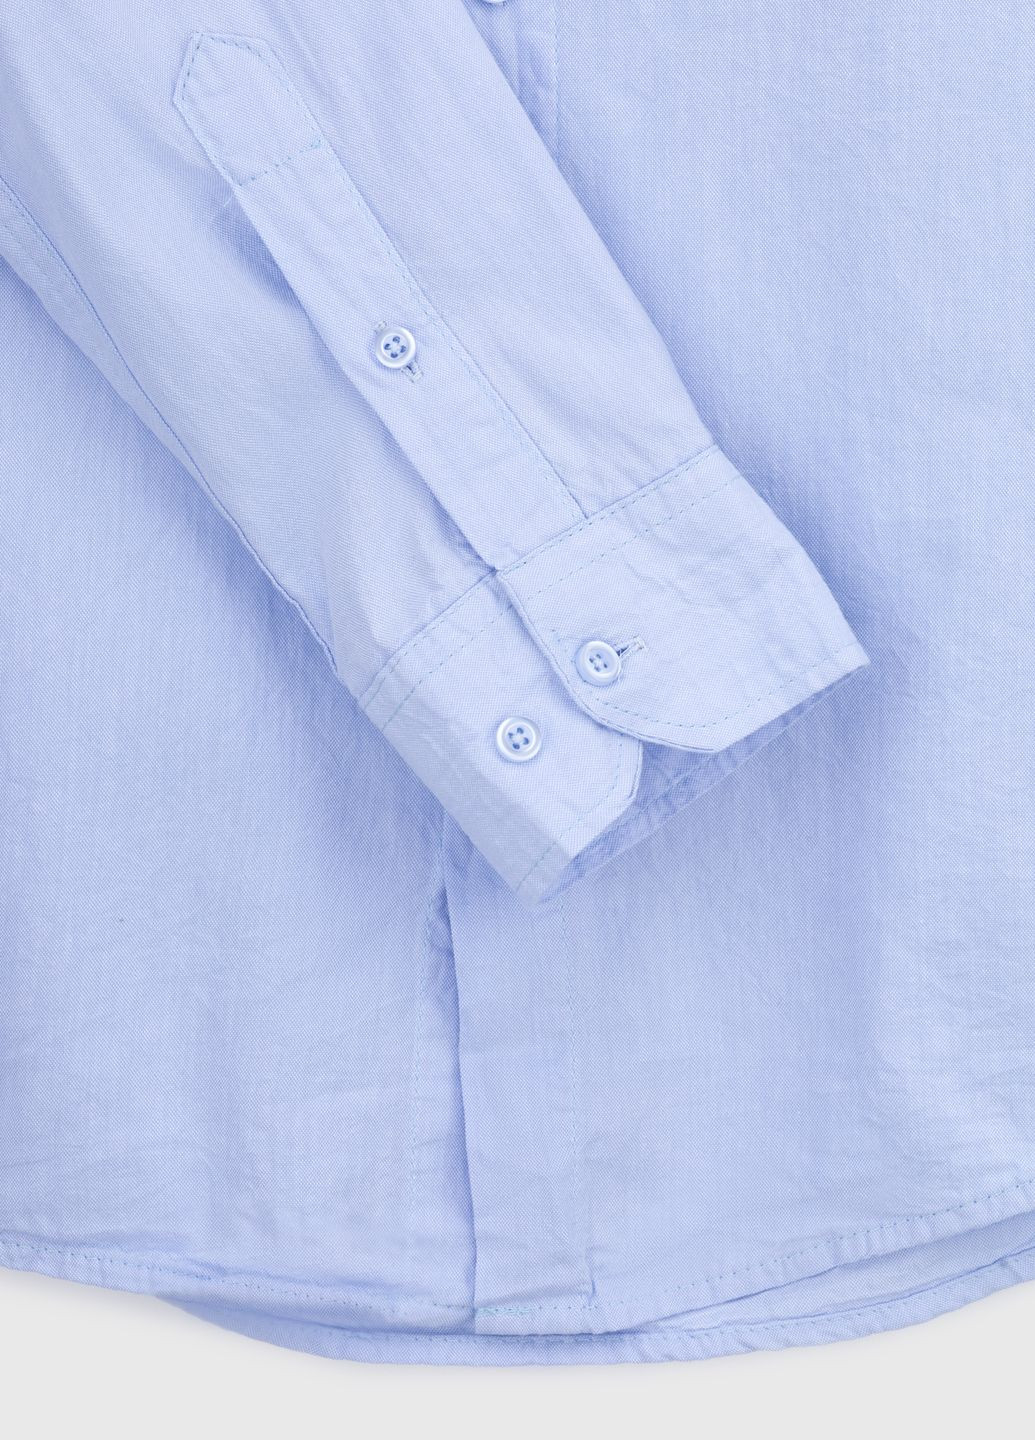 Голубой повседневный рубашка однотонная Figo